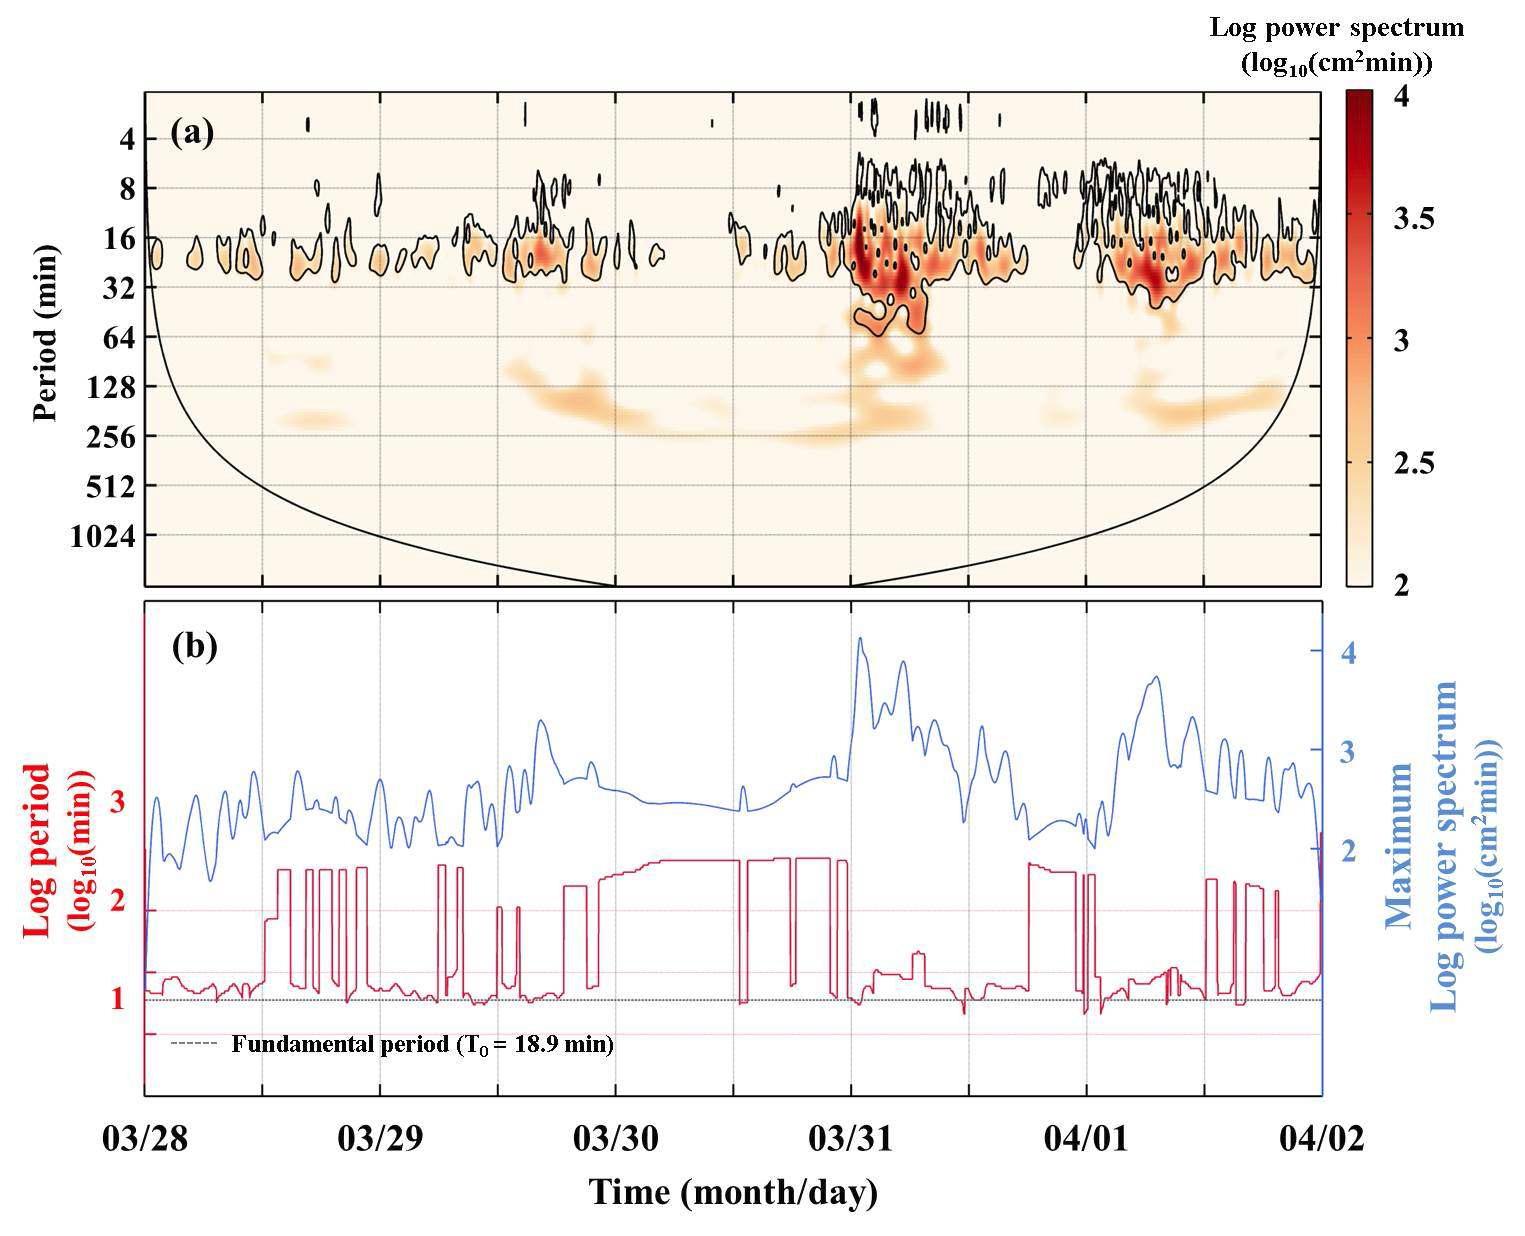 2007년 3월 31일 이상파랑 전파 후 발생한 대흑산도 항내 부진동; (a) 원시 조위자료에서 4시간미만으로 high-pass filter한 wavelet scaleogram, (b) 이상파랑 도달 시 발생한 최대파워 스펙트럼 및 주기 분석 결과